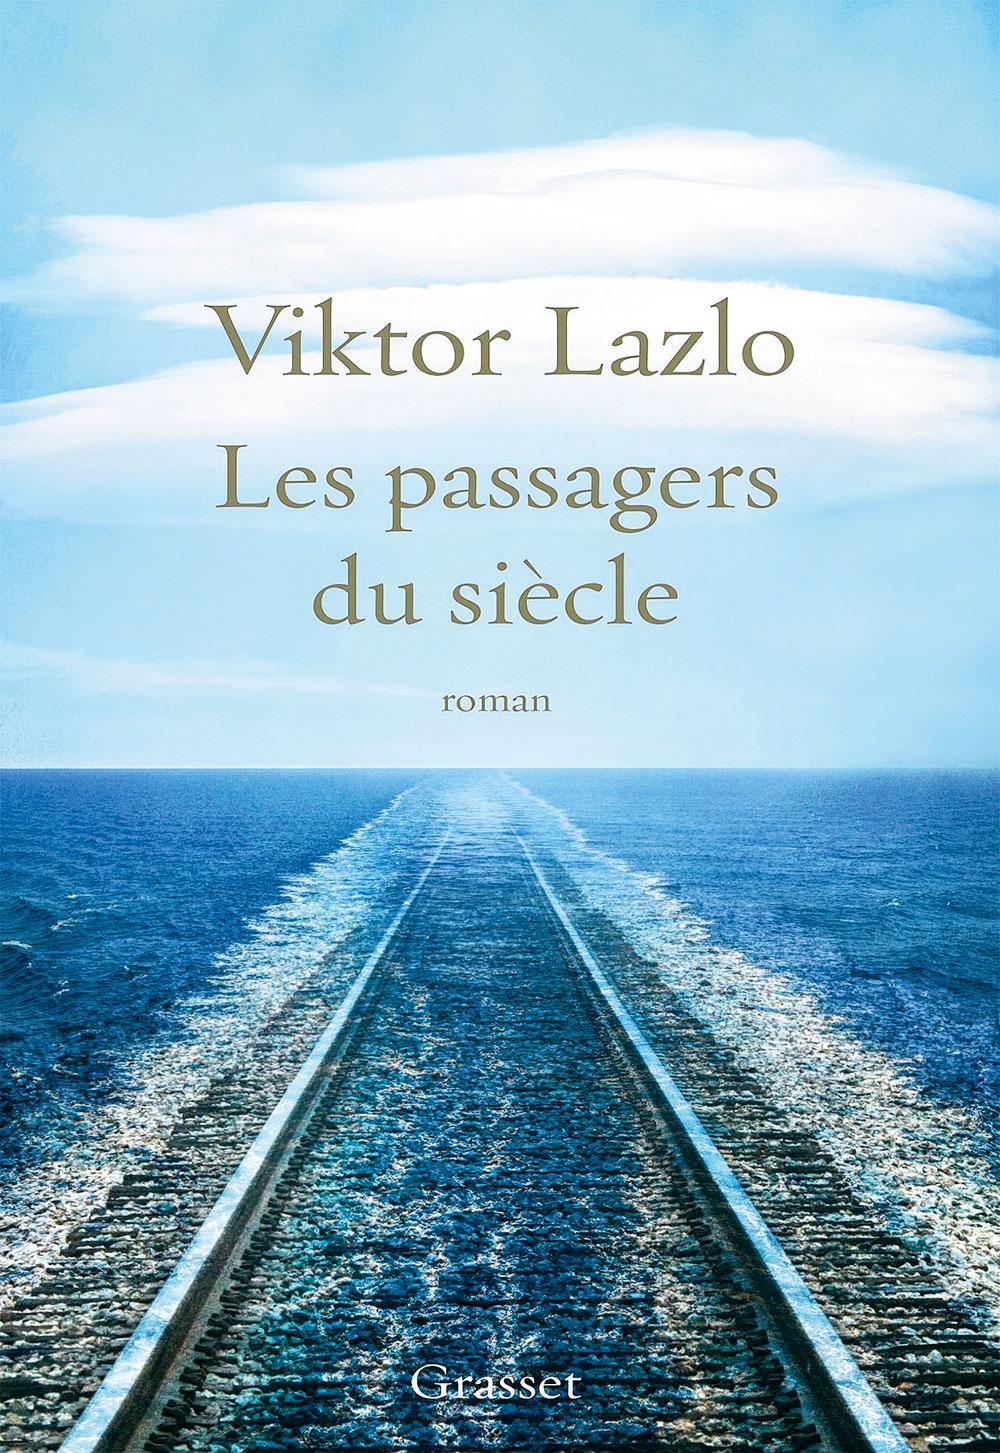 Leur vie est un feuilleton: Viktor Lazlo, notre Dame de Paris